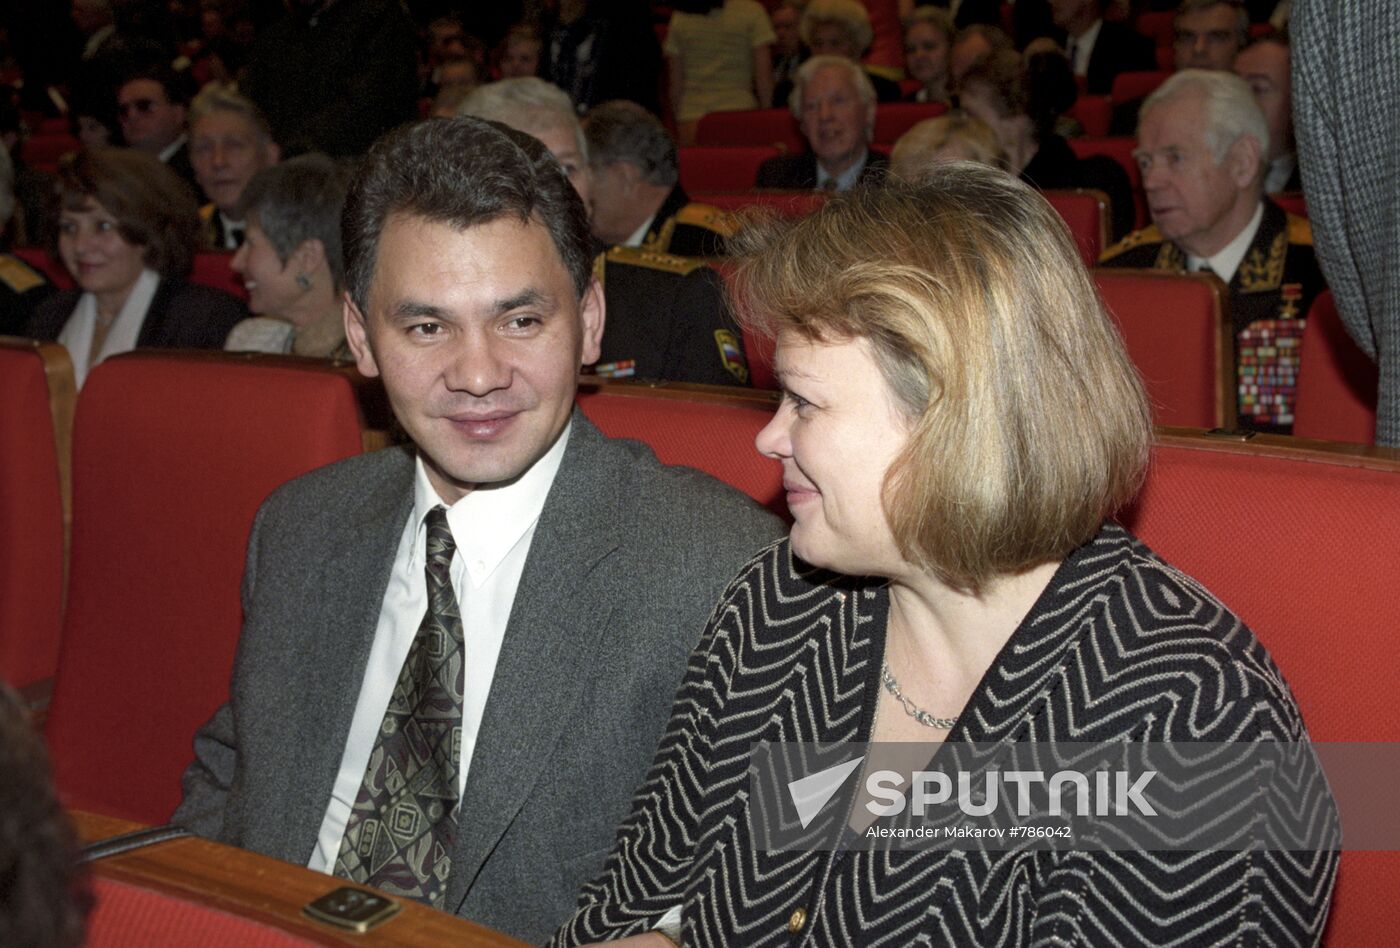 Sergei Shoigu with spouse